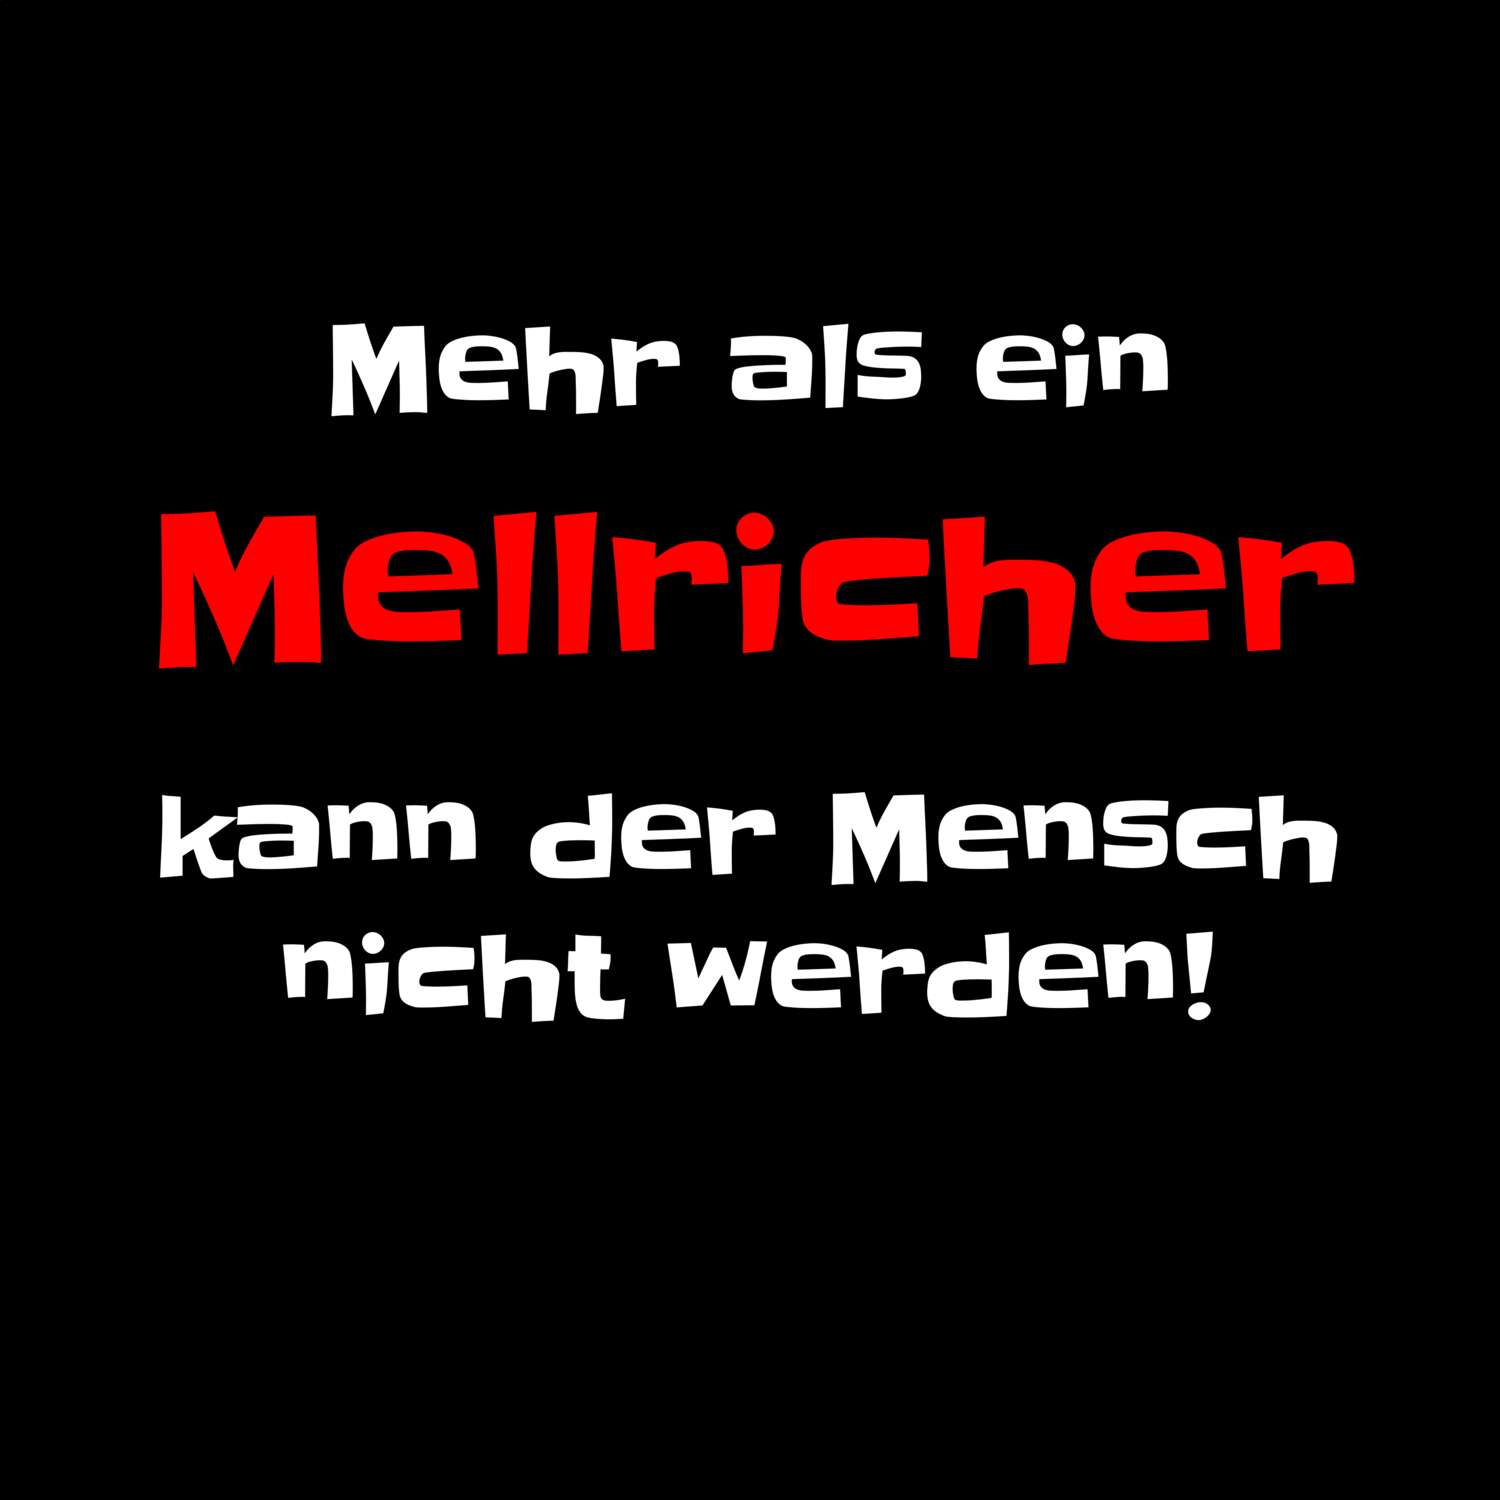 Mellrich T-Shirt »Mehr als ein«